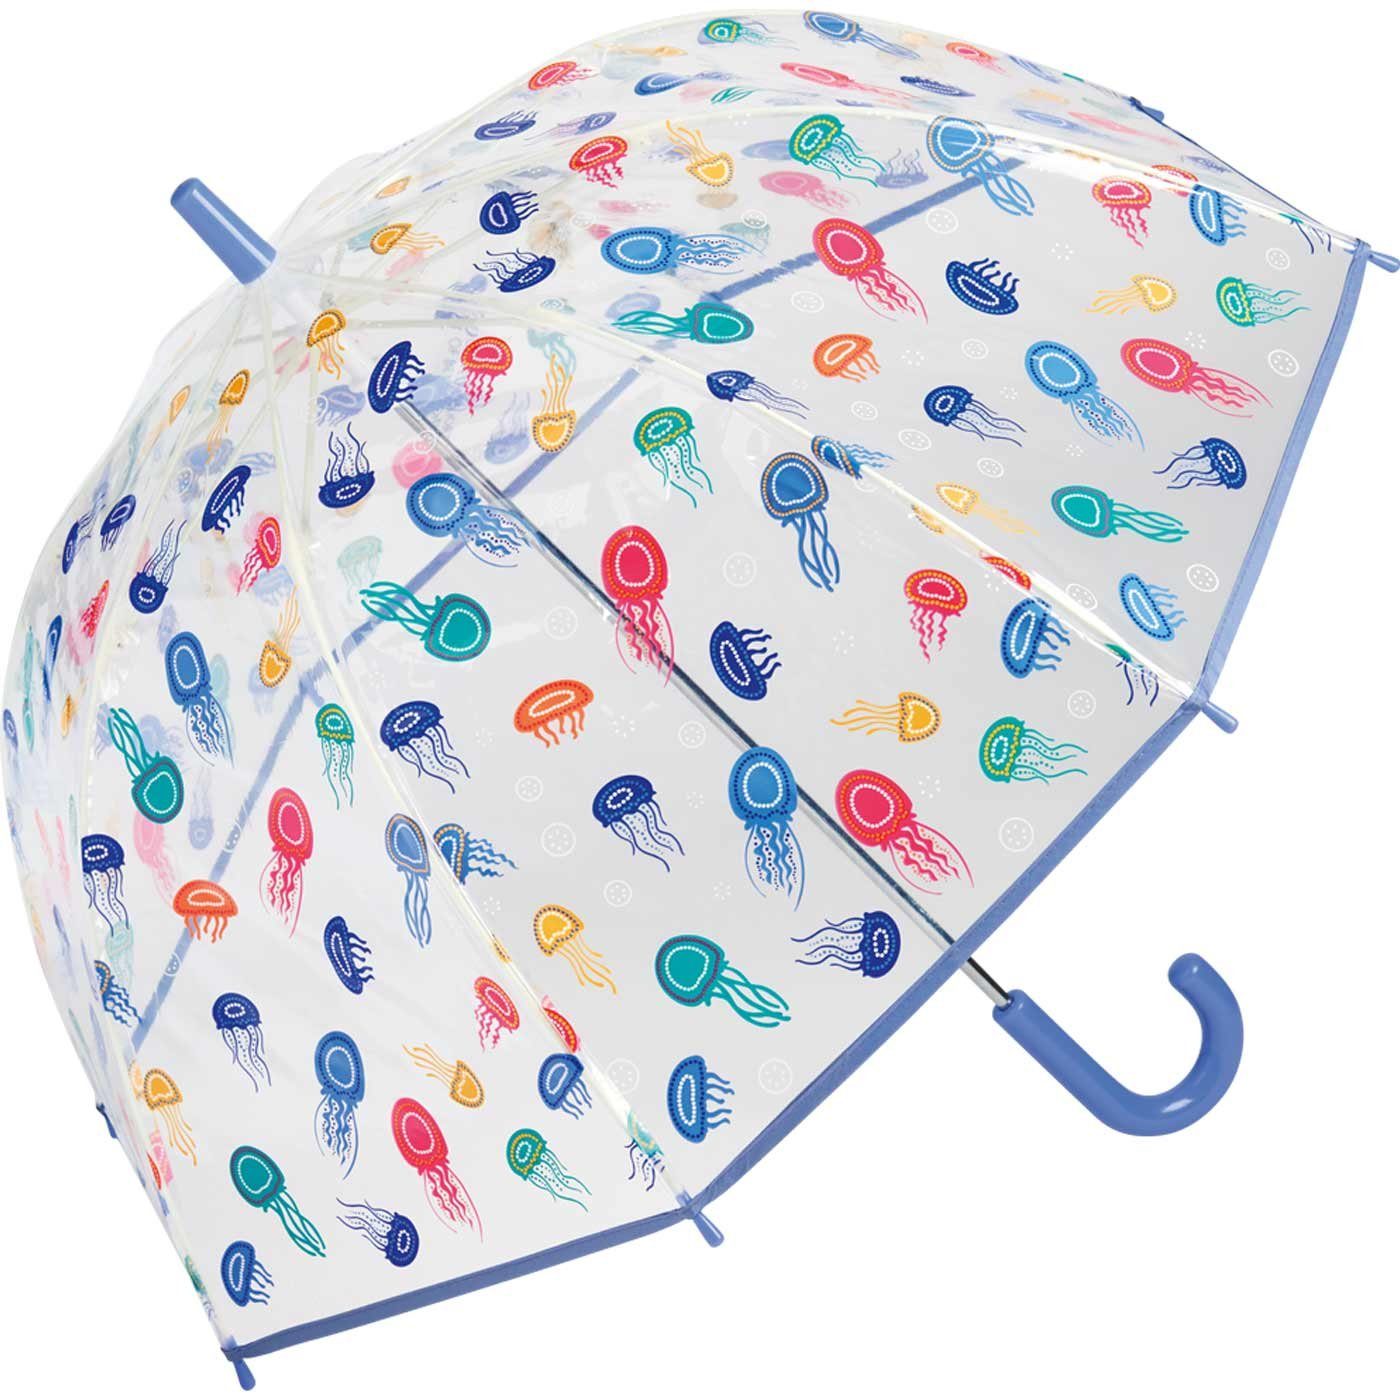 Regen Langregenschirm mit Quallen-Motiv für Dach, beim Colors Spaß of United Kinder-Glockenschirm transparent-buntem lustiges Benetton